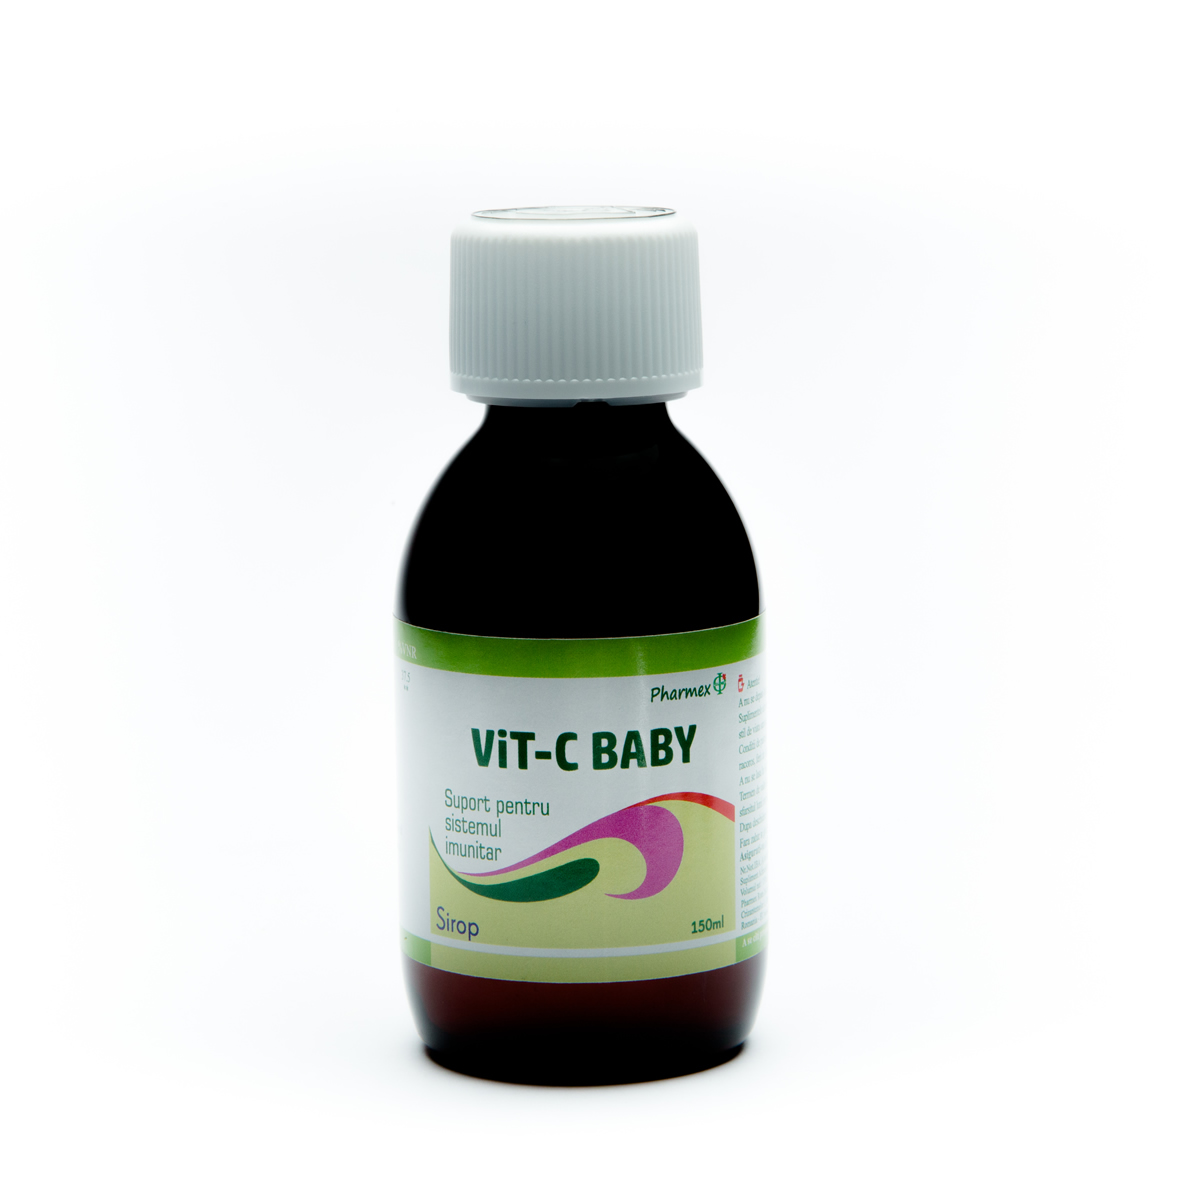 Imunitate - Vitamina C Baby sirop, 150ml, Pharmex, sinapis.ro